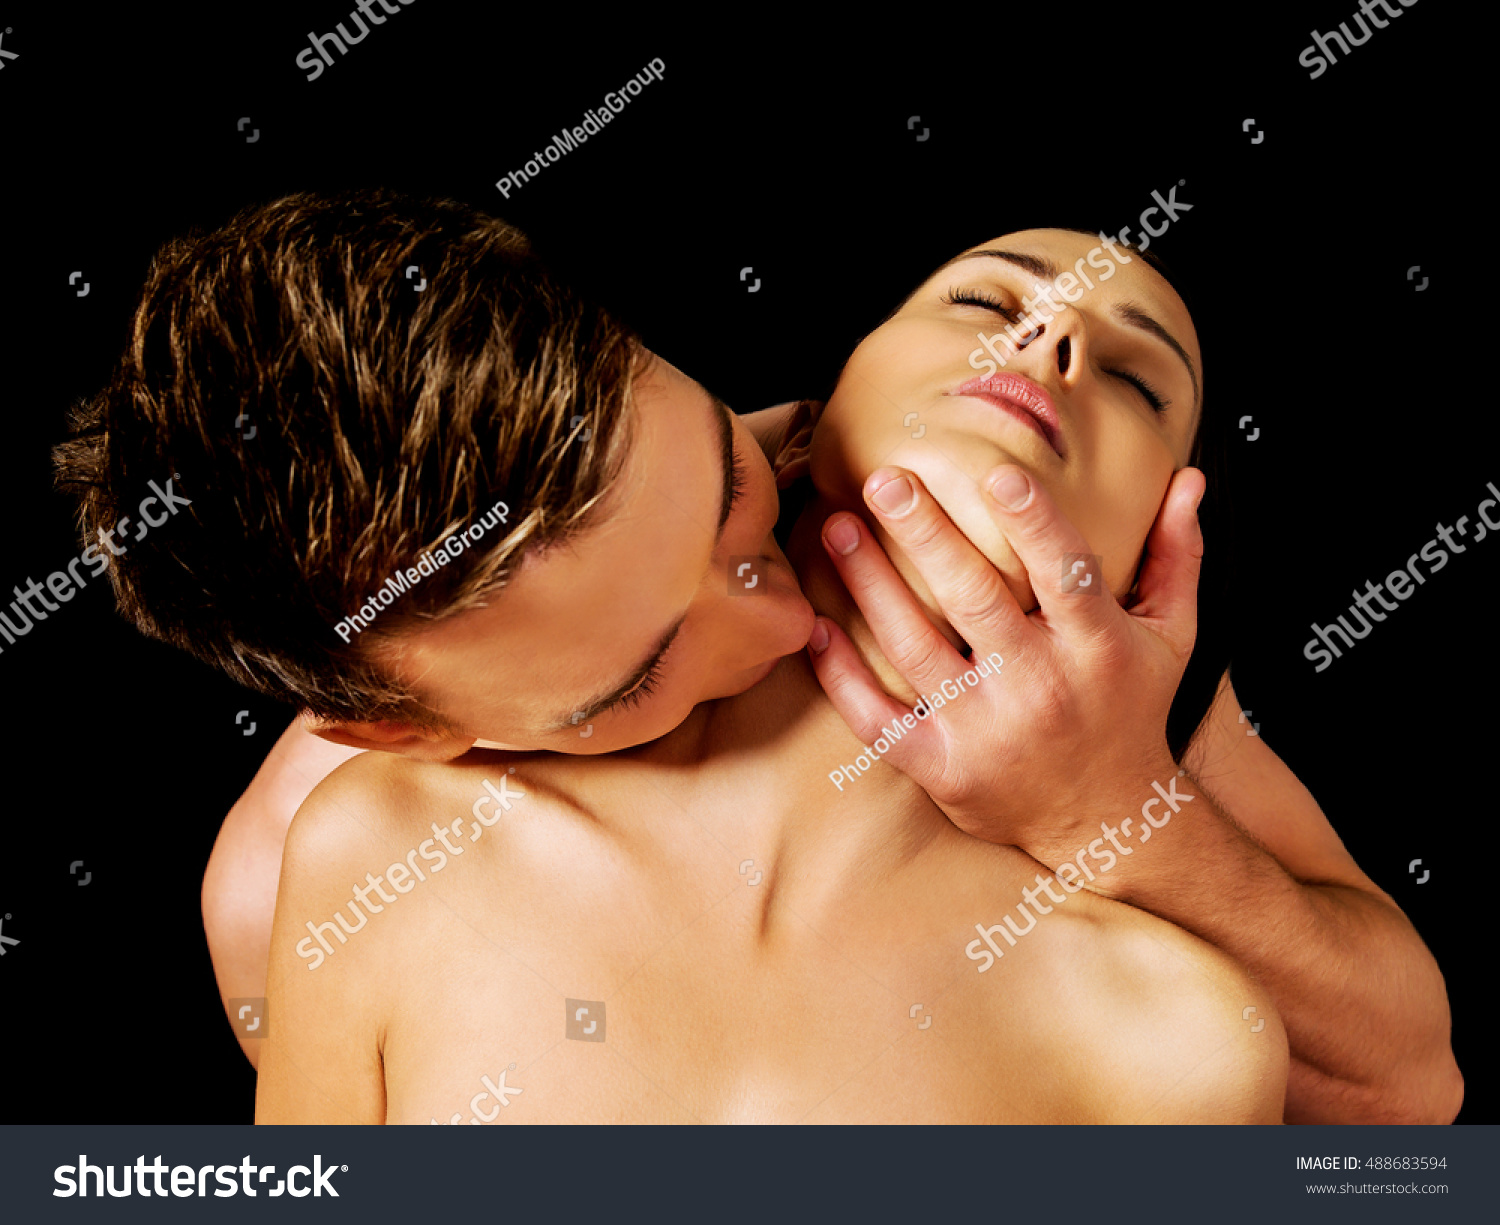 сонник когда вас целуют в грудь (120) фото